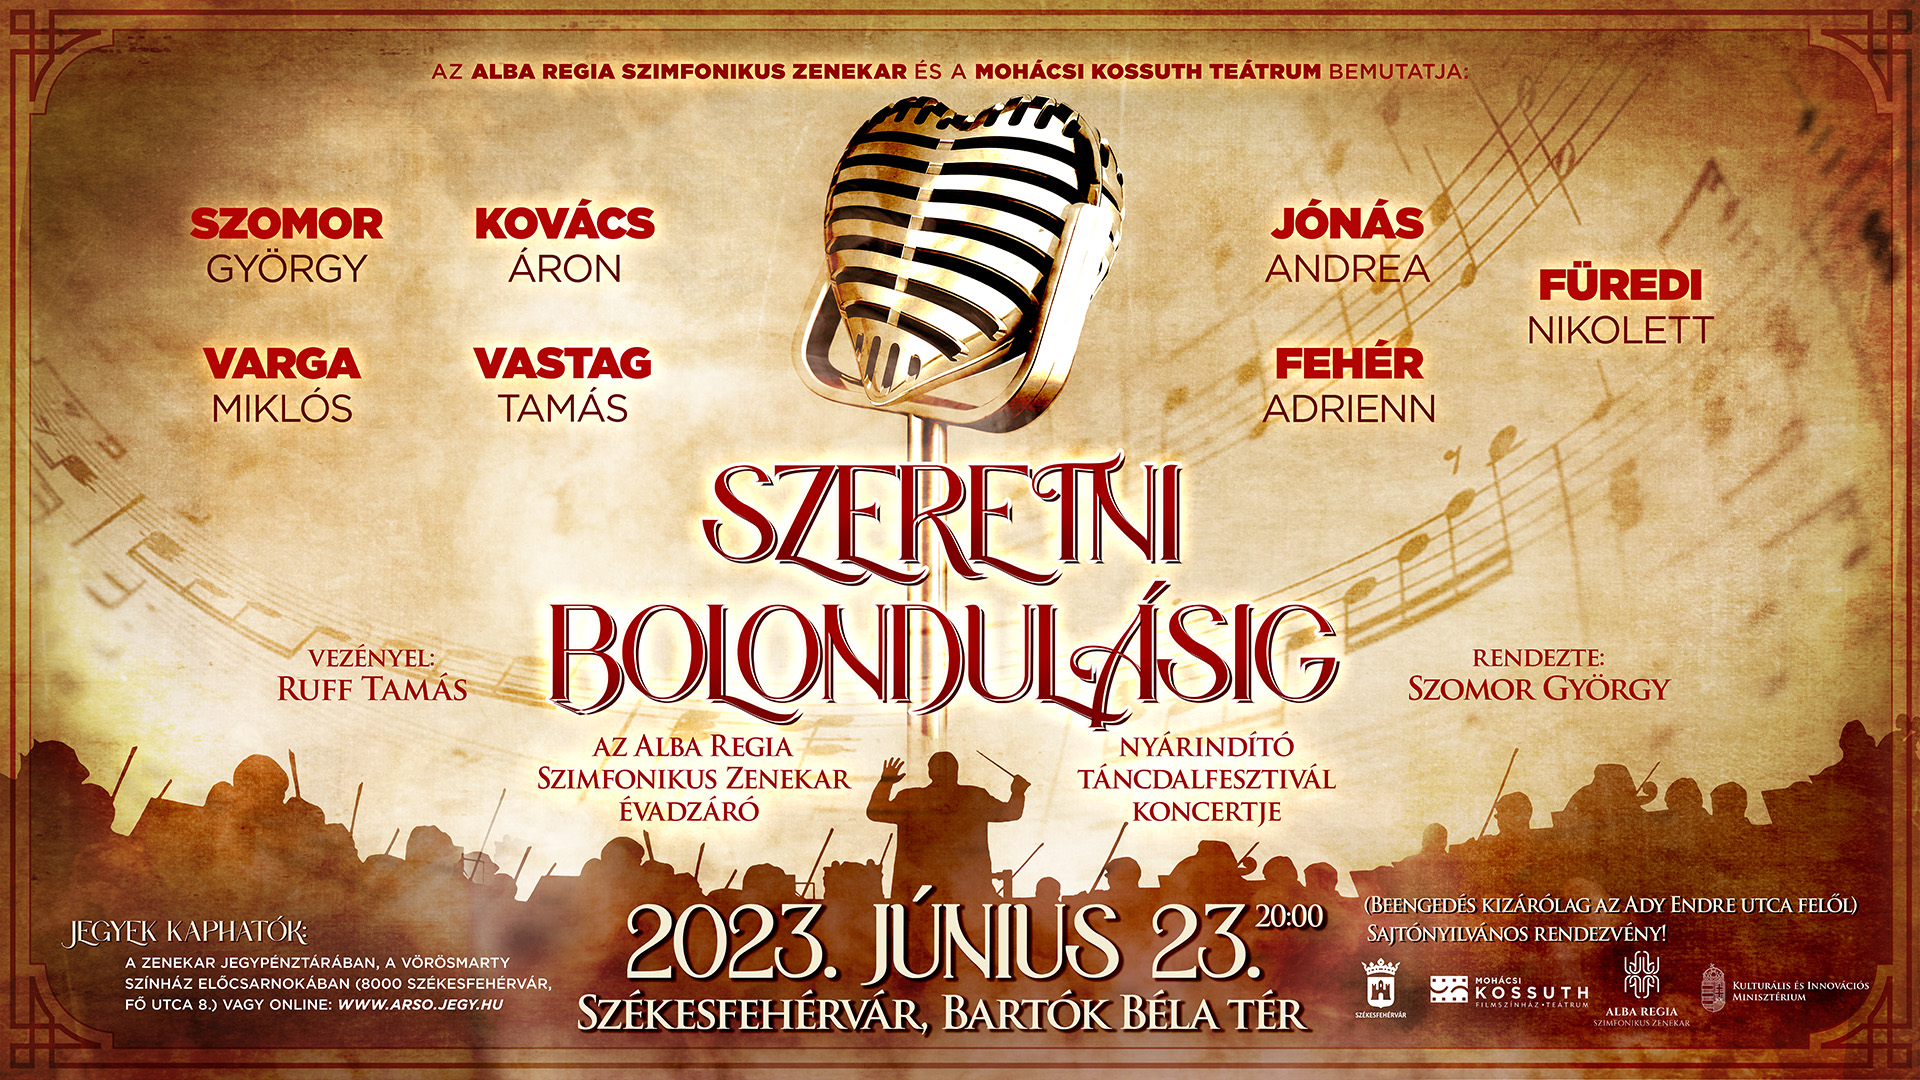 Szeretni bolondulásig! – az Alba Regia Szimfonikus Zenekar évadzáró, nyárindító koncertje